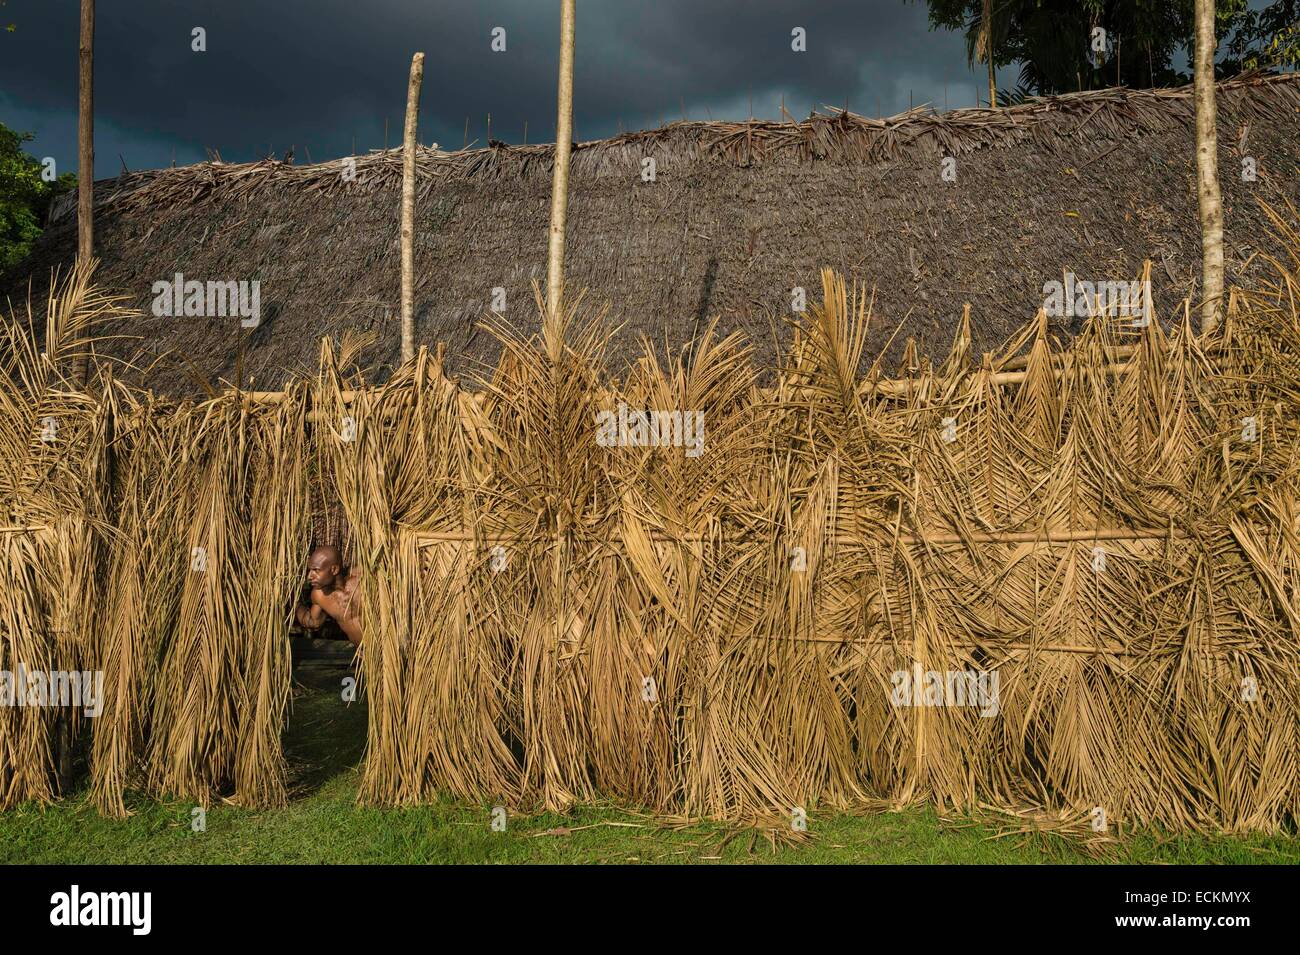 Papua Nuova Guinea, Est provincia Sepik, fiume Sepik regione, Yenchen village, rituale scarificazione, avviare nel recinto sacro a cerimonie di iniziazione Foto Stock